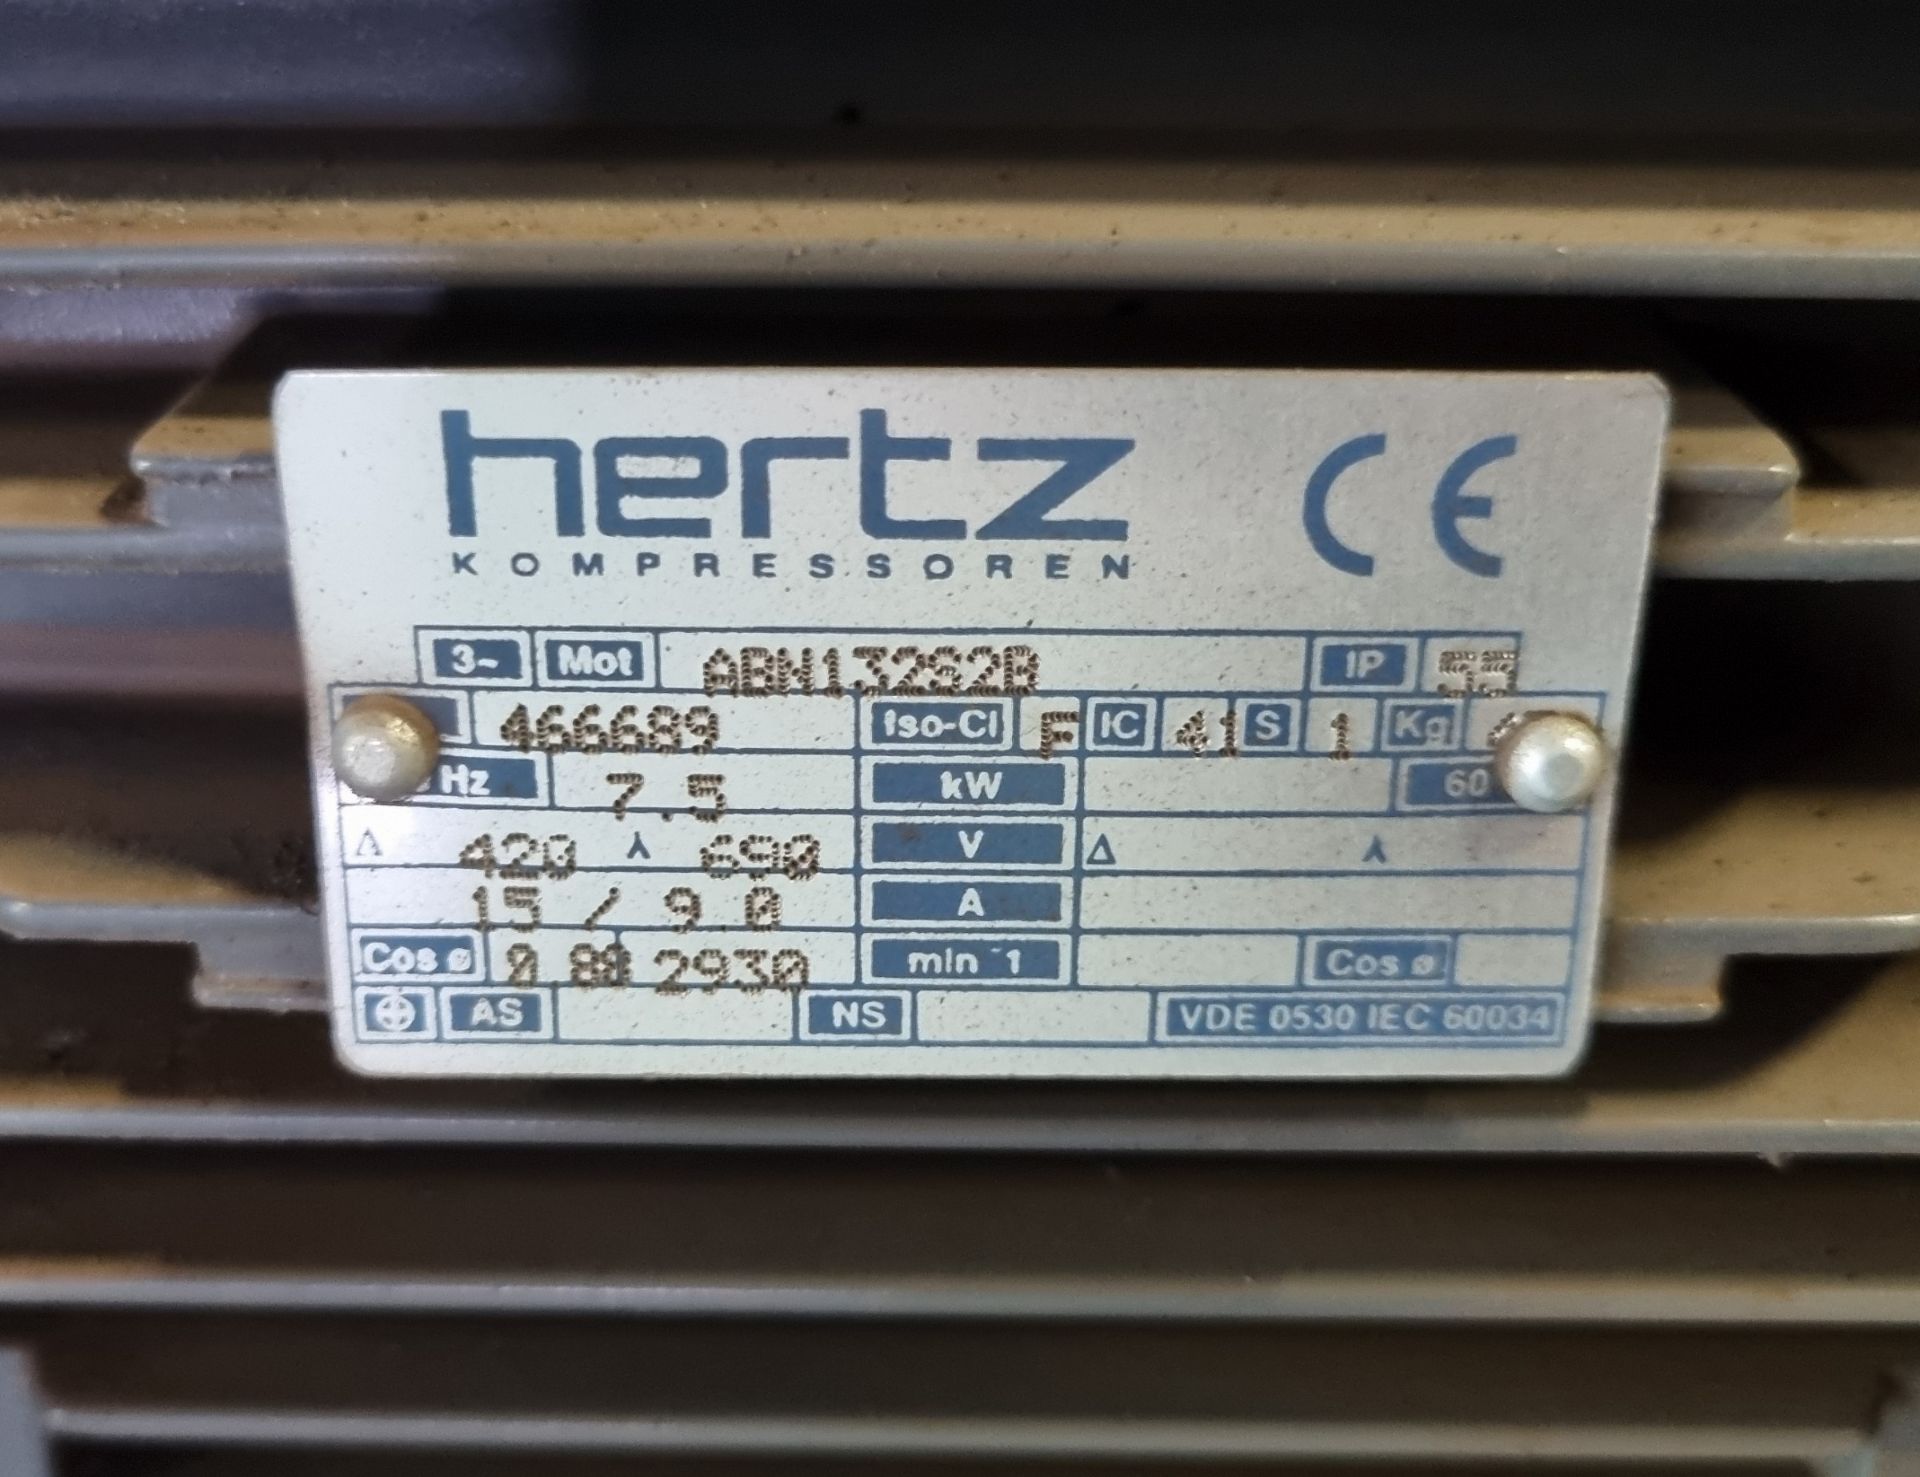 Hertz Kompressoren HGS 7 rotary screw compressor - Pressure: 10 BAR - 400V - 3 phase - 50Hz - Bild 11 aus 12